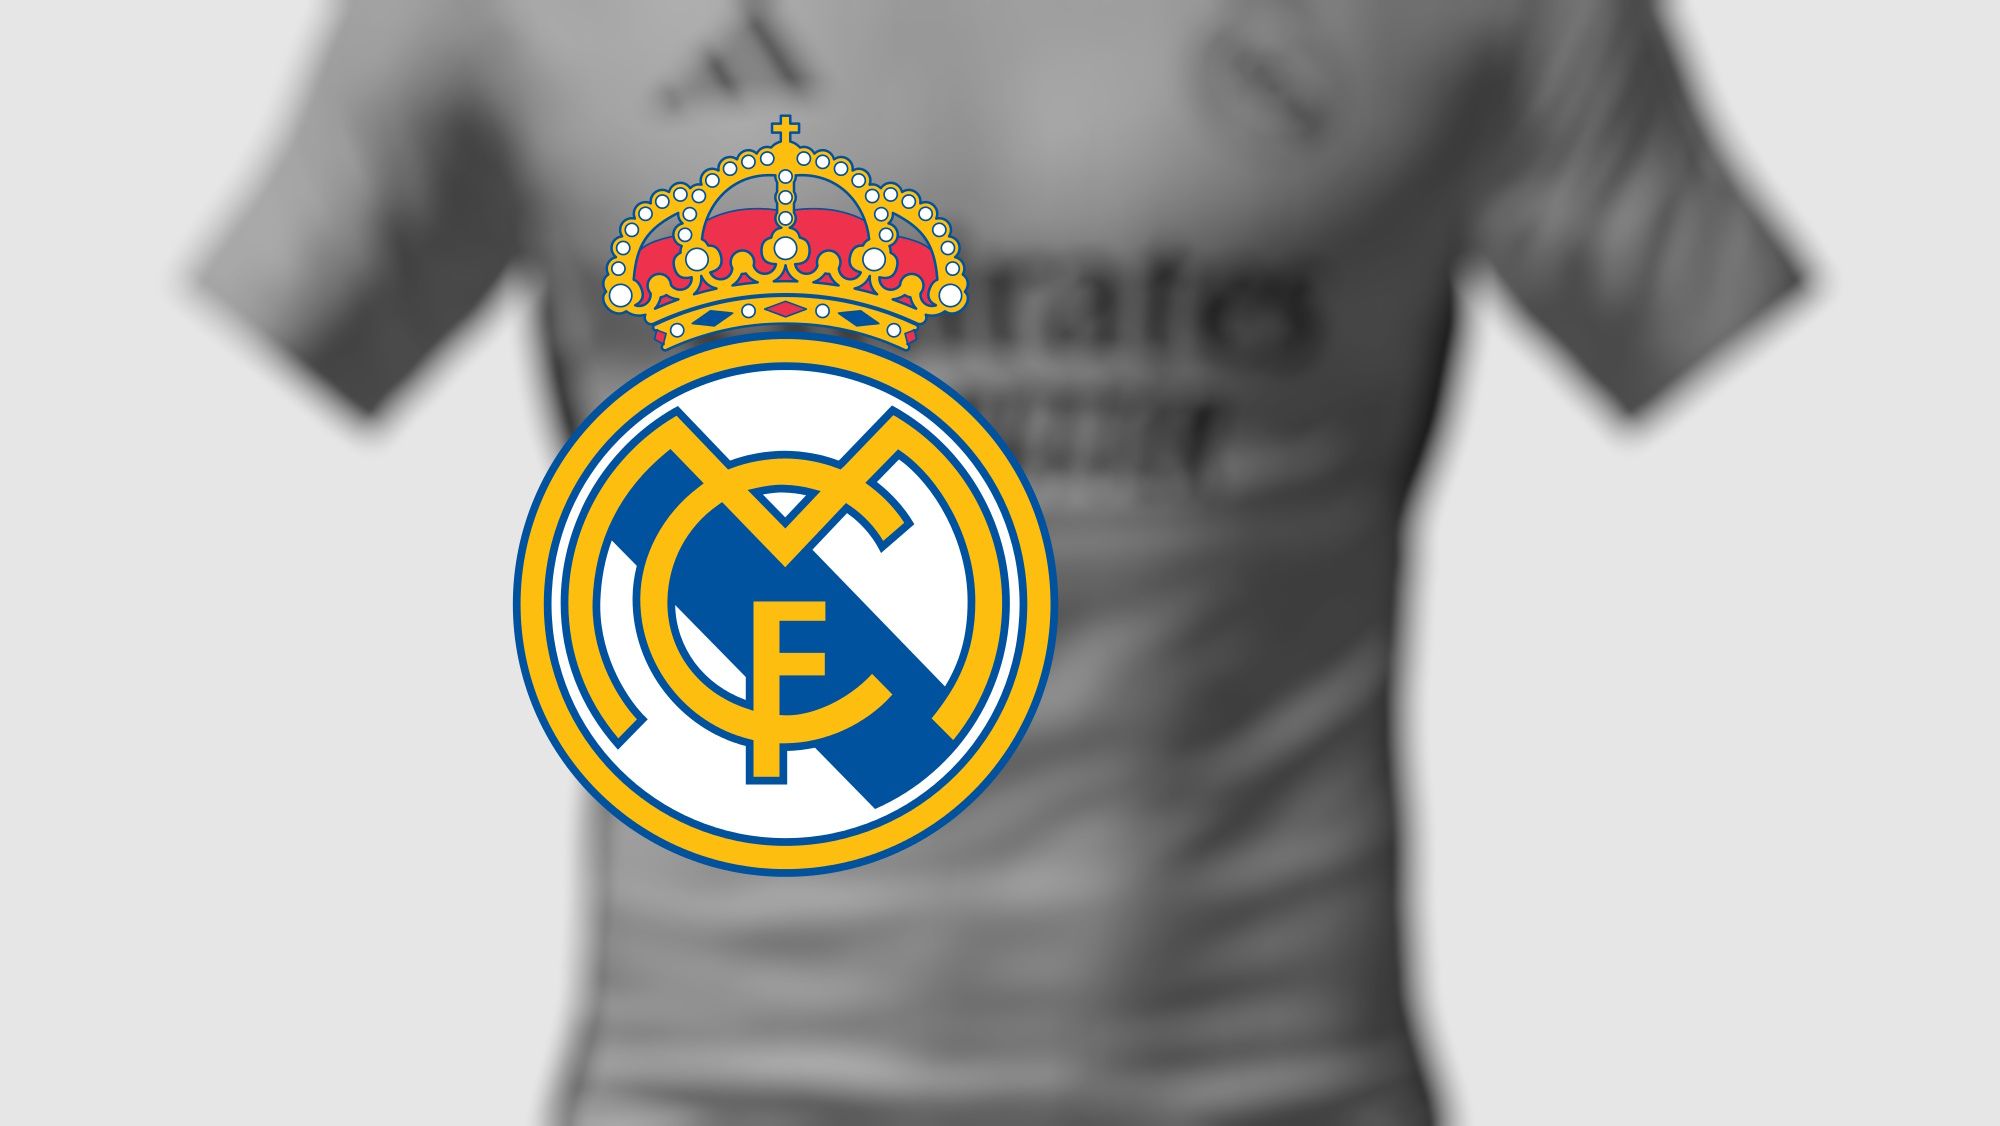 Real madrid camiseta real madrid Real Madrid camiseta real madrid